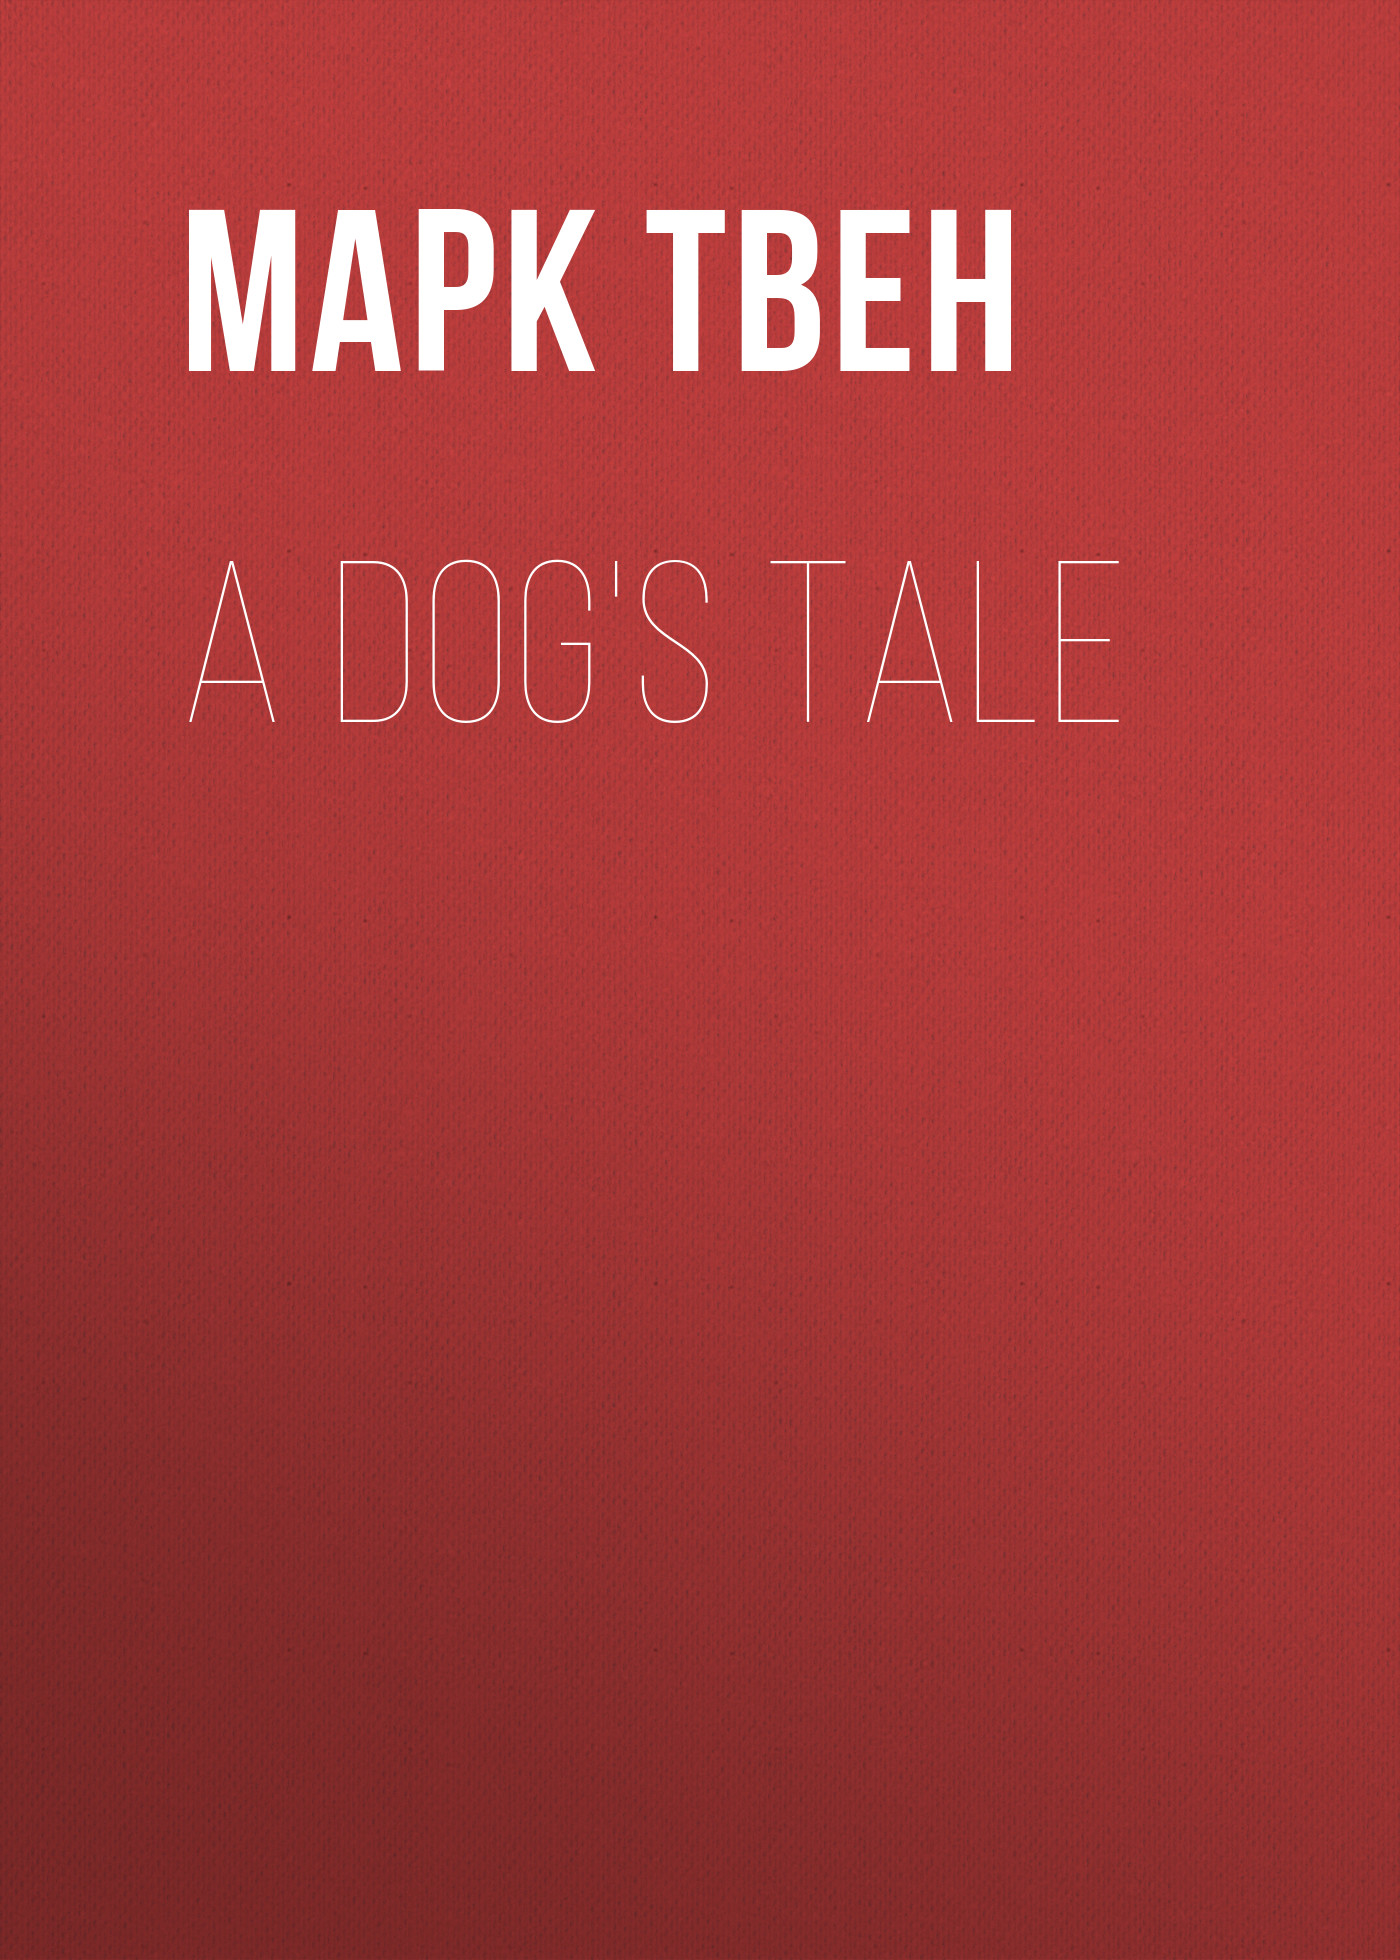 Книга A Dog's Tale из серии , созданная Марк Твен, может относится к жанру Зарубежная старинная литература, Зарубежная классика. Стоимость электронной книги A Dog's Tale с идентификатором 25475423 составляет 0 руб.